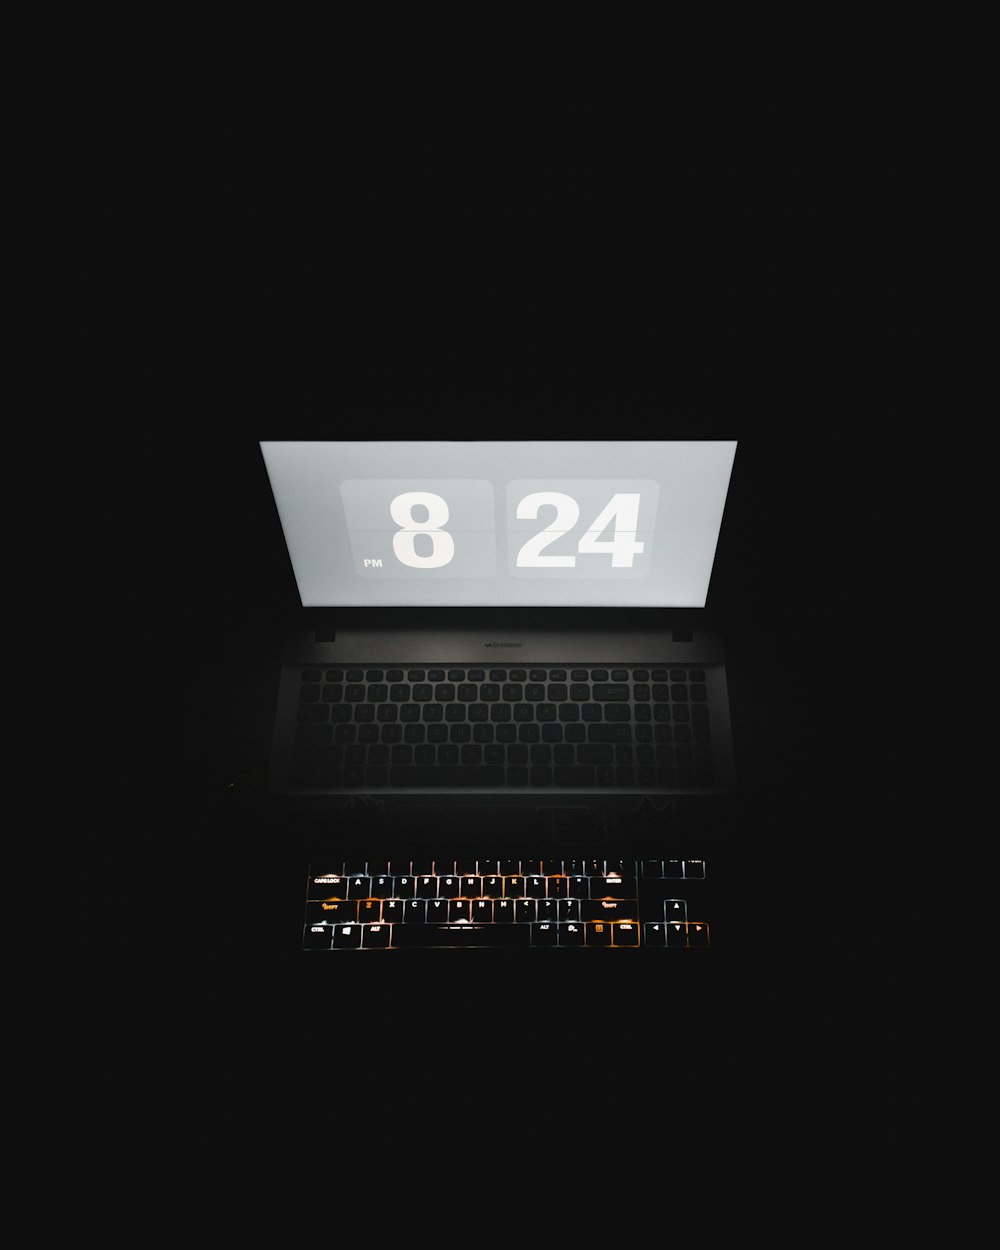 Ordenador portátil negro con el número 2